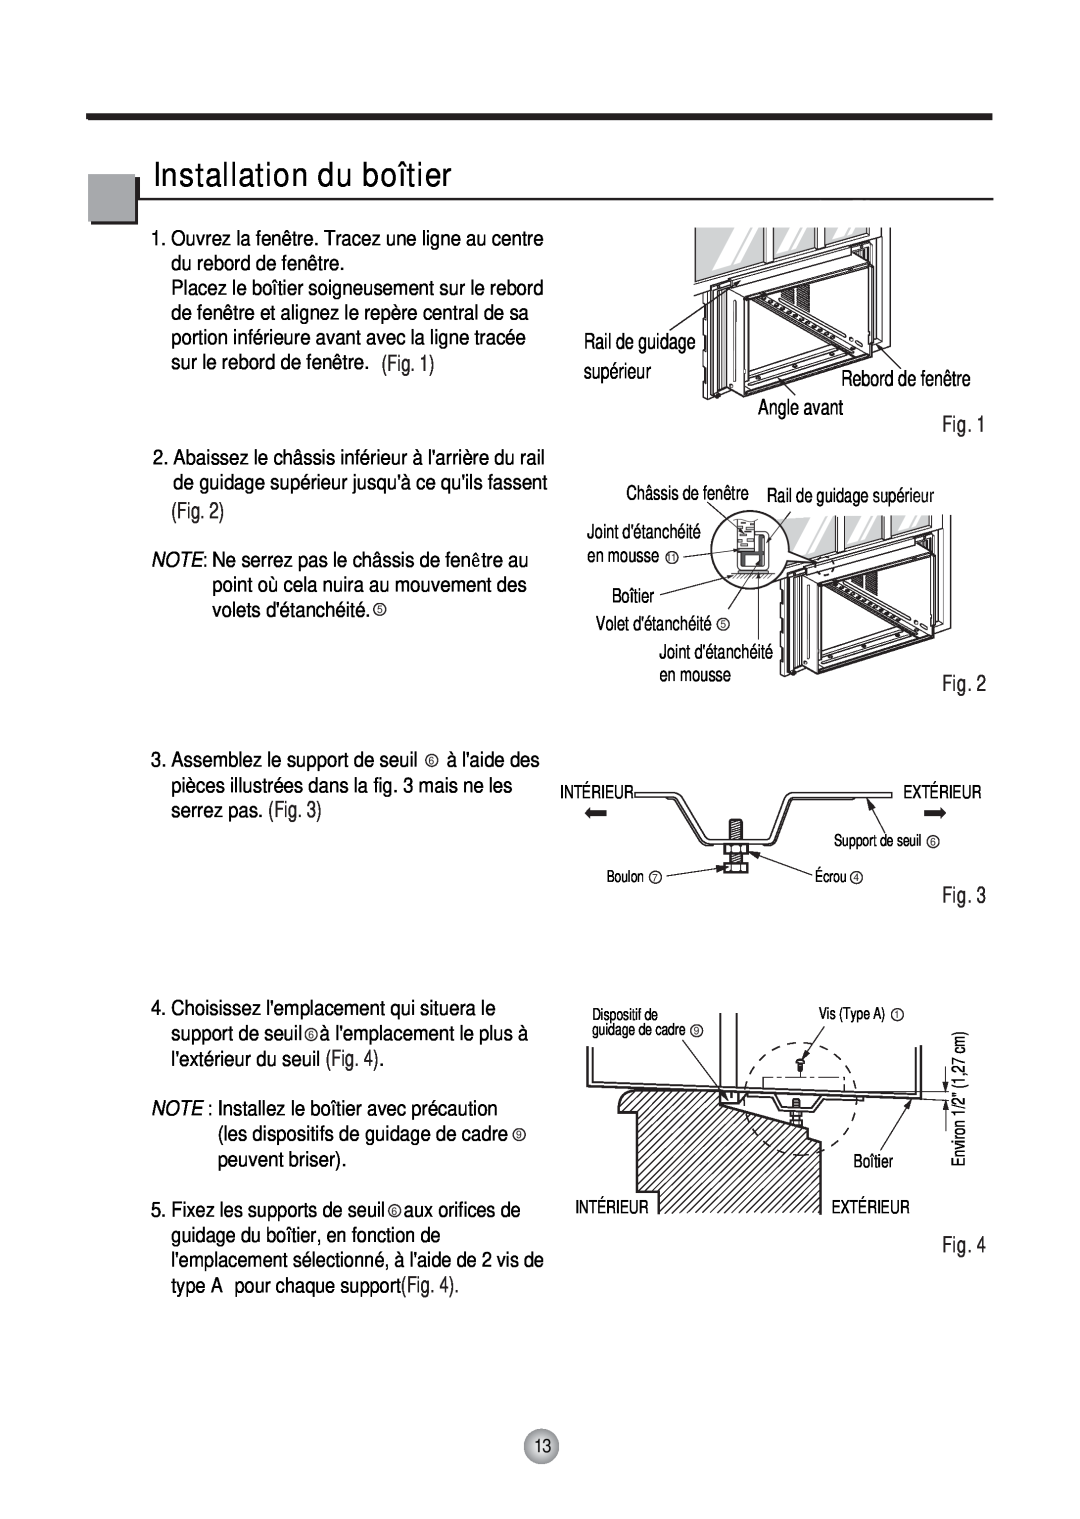 Friedrich CP12, CP10 manual Installation du boîtier, Rail de guidage, supérieur, Angle avant 